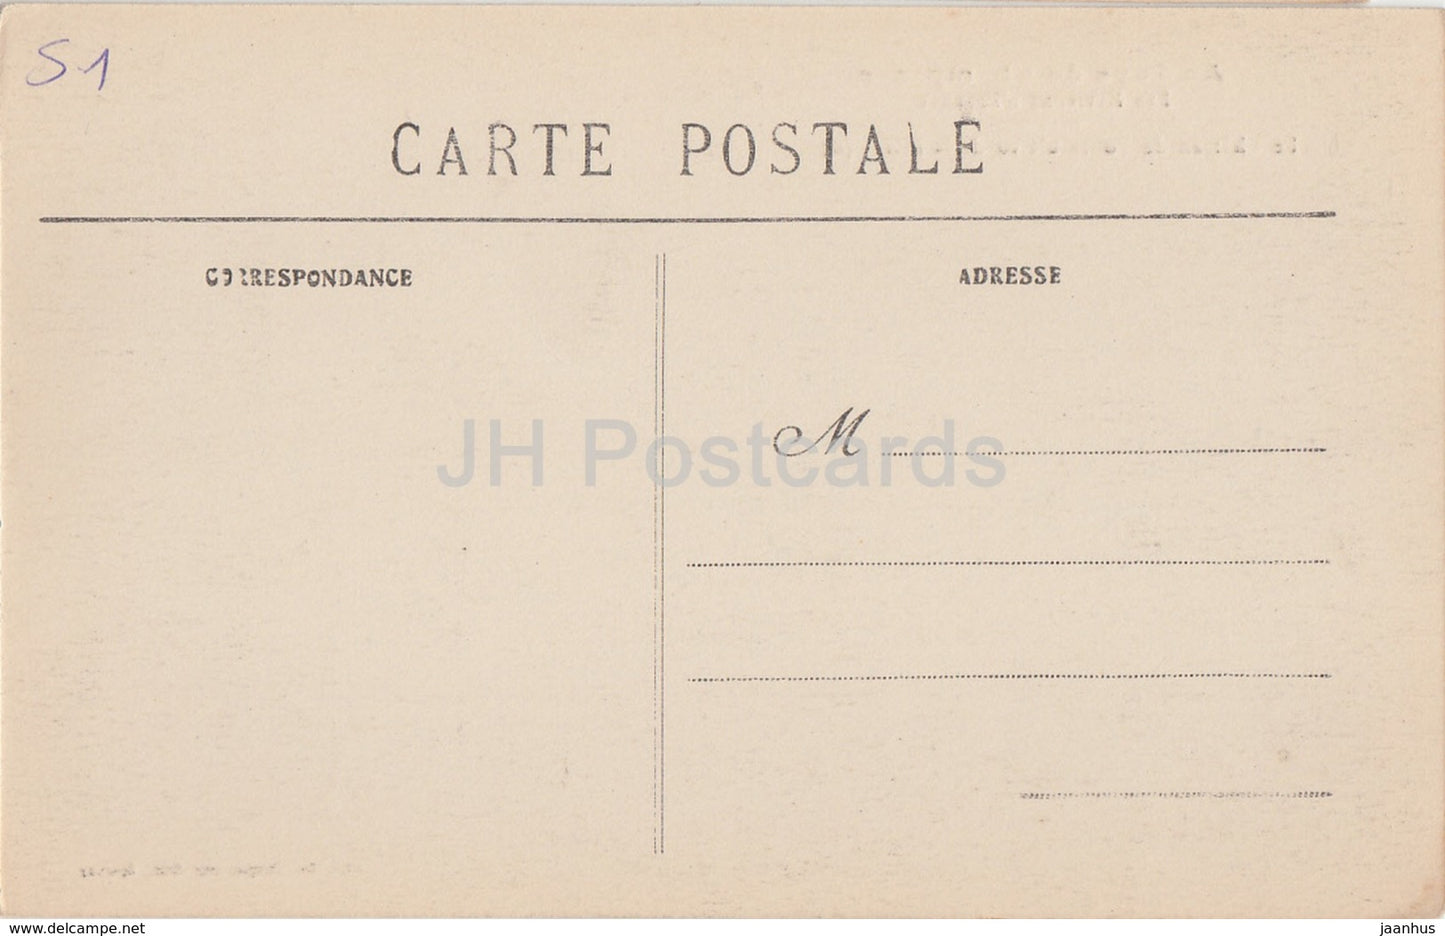 Le Chateau de Boursault vu de la Plaine - Au Pays du Champagne - Schloss - 65 - alte Postkarte - Frankreich - unbenutzt